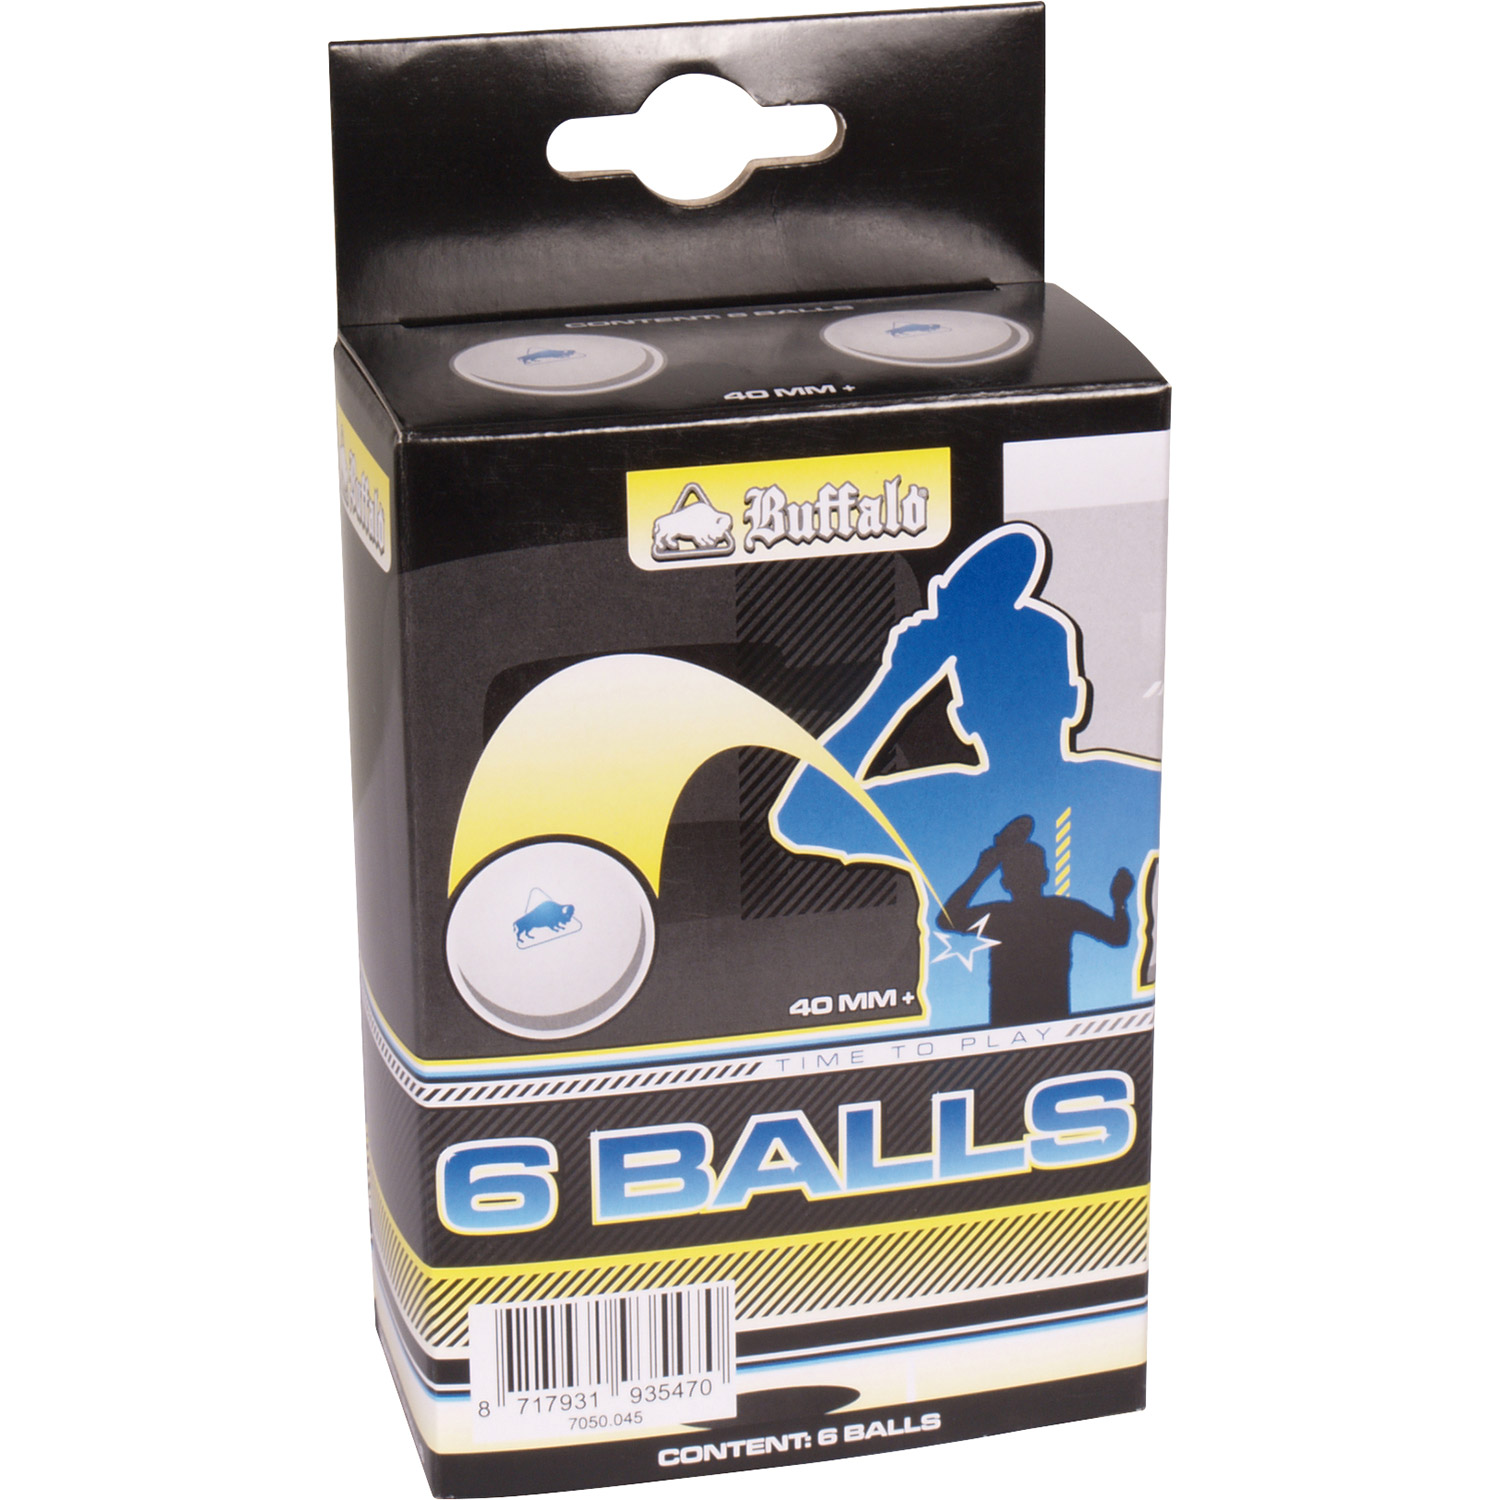 TC0736-3: Tafeltennis ballen Buffalo 6balls 3 ster